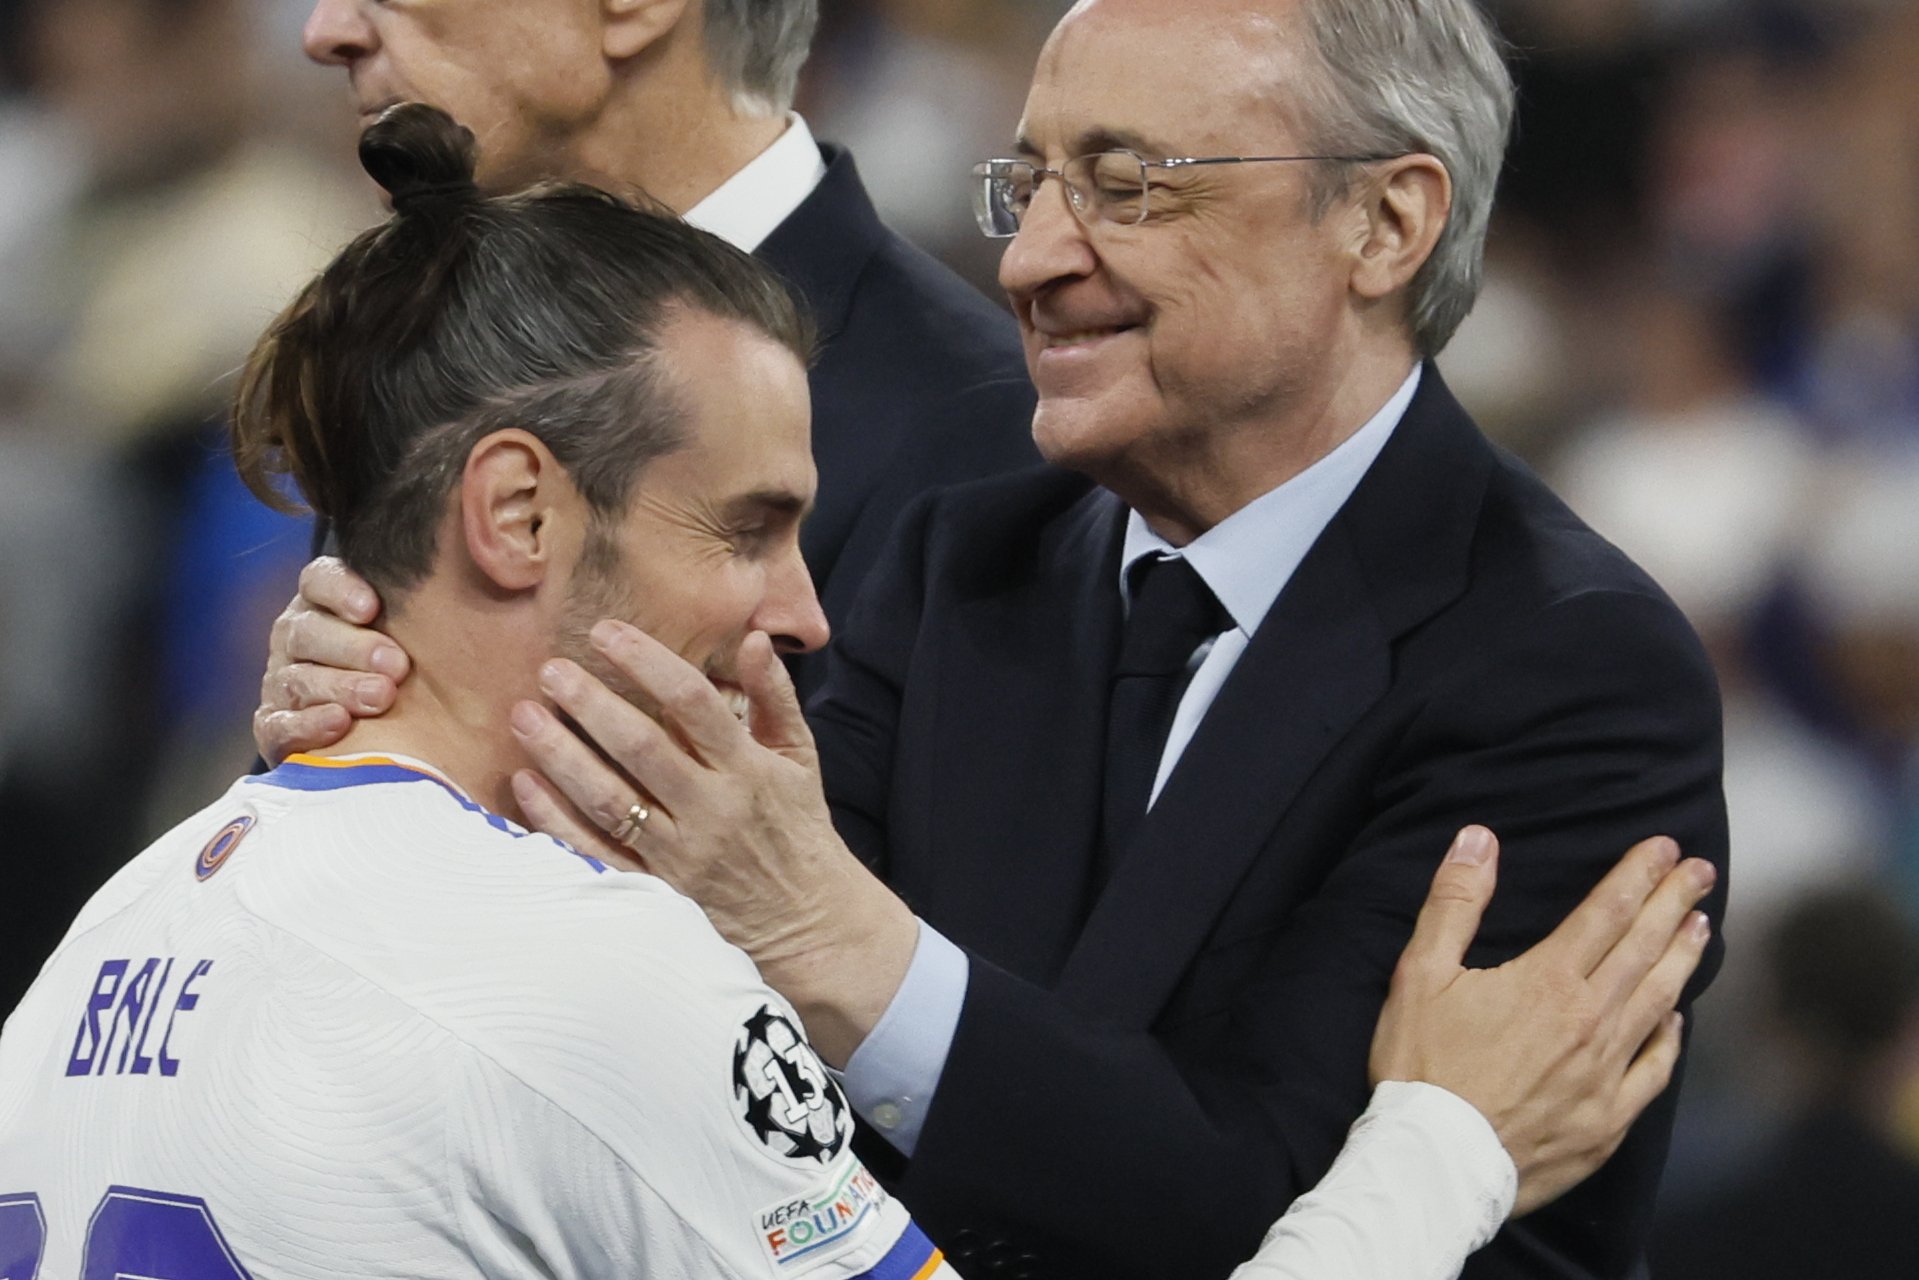 El show de Bale que no se esperaba ni Florentino Pérez, foto y polémica, por esto, en el Real Madrid